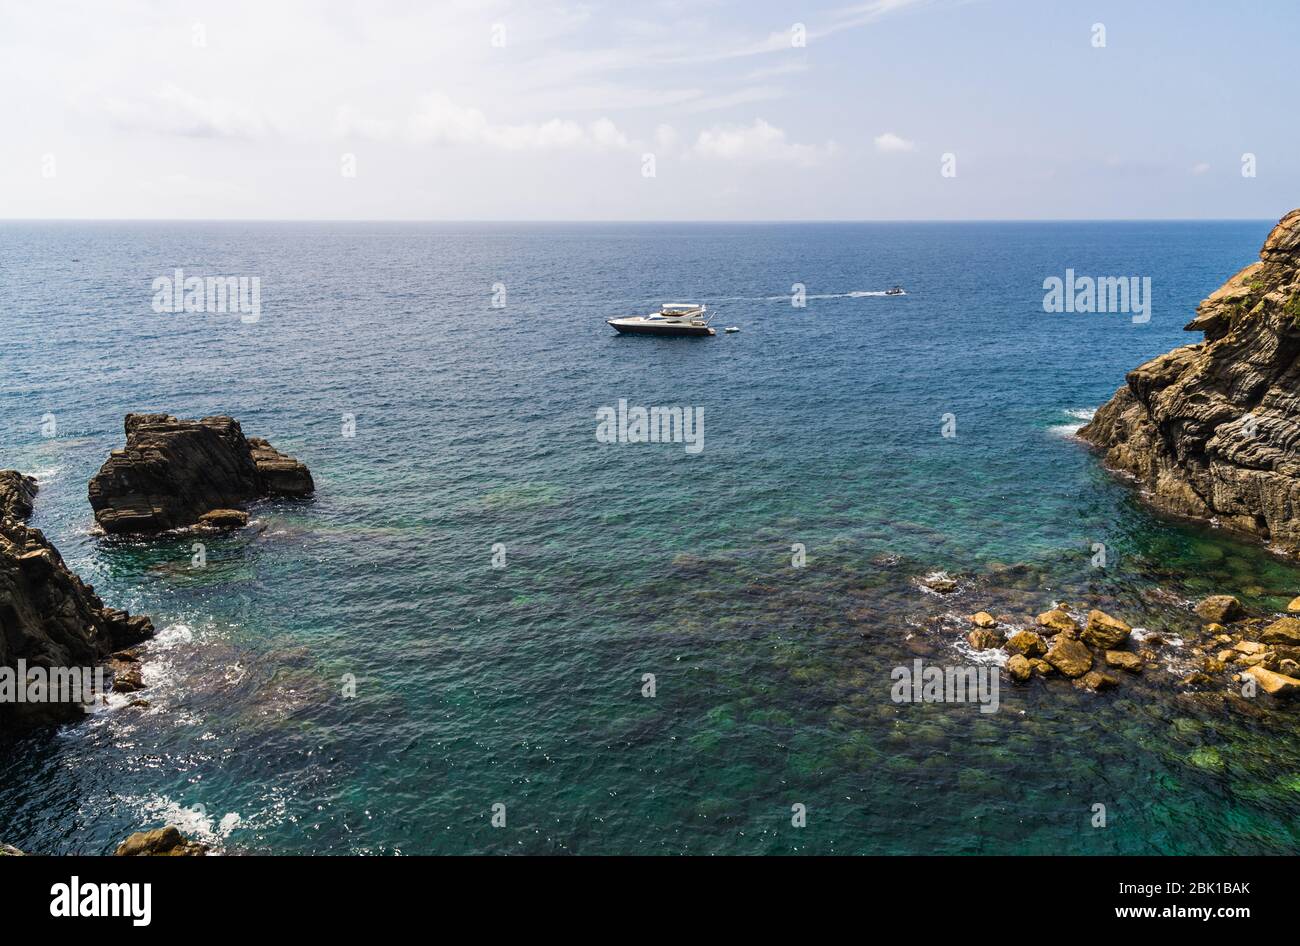 Ligurische Küste in Ligurien, Italien, mit Wasser und Booten. Stockfoto